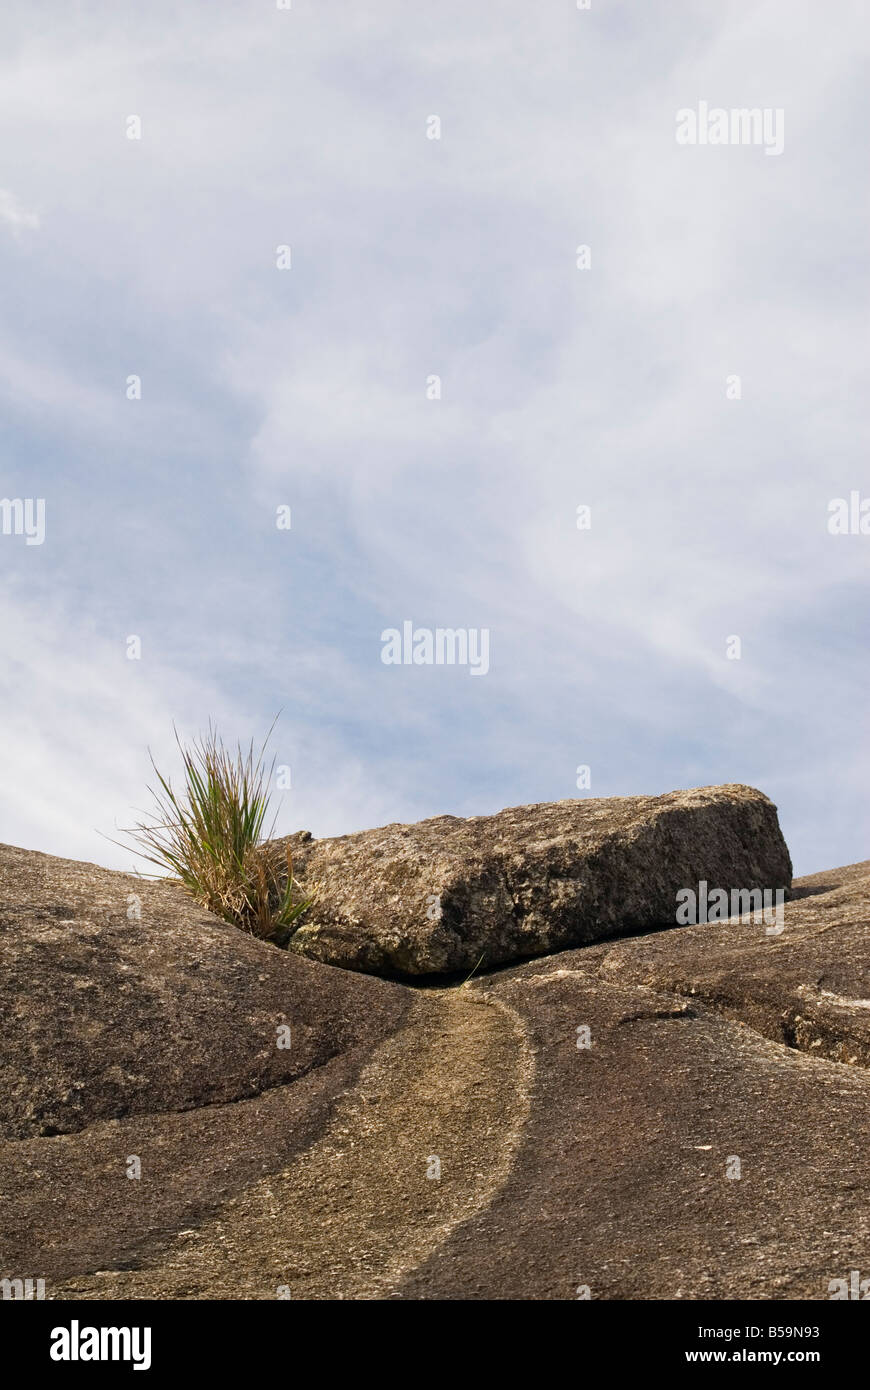 Hardy résistantes au sel, recherche d'un lieu à l'herbe de croître parmi les rochers de granit à verts Piscine Beach, Australie occidentale Banque D'Images